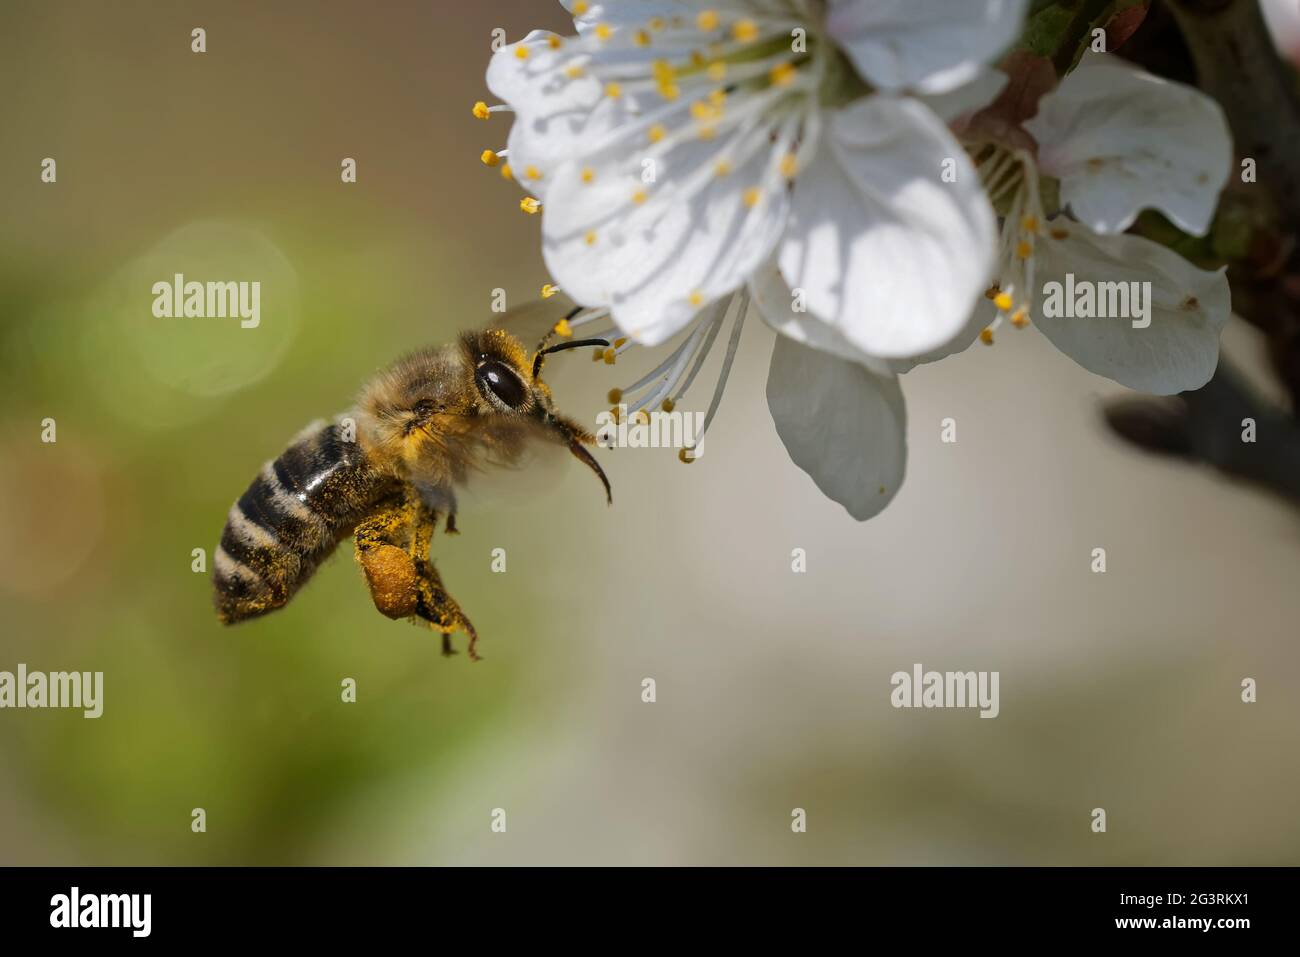 Honey bee in the garden Stock Photo